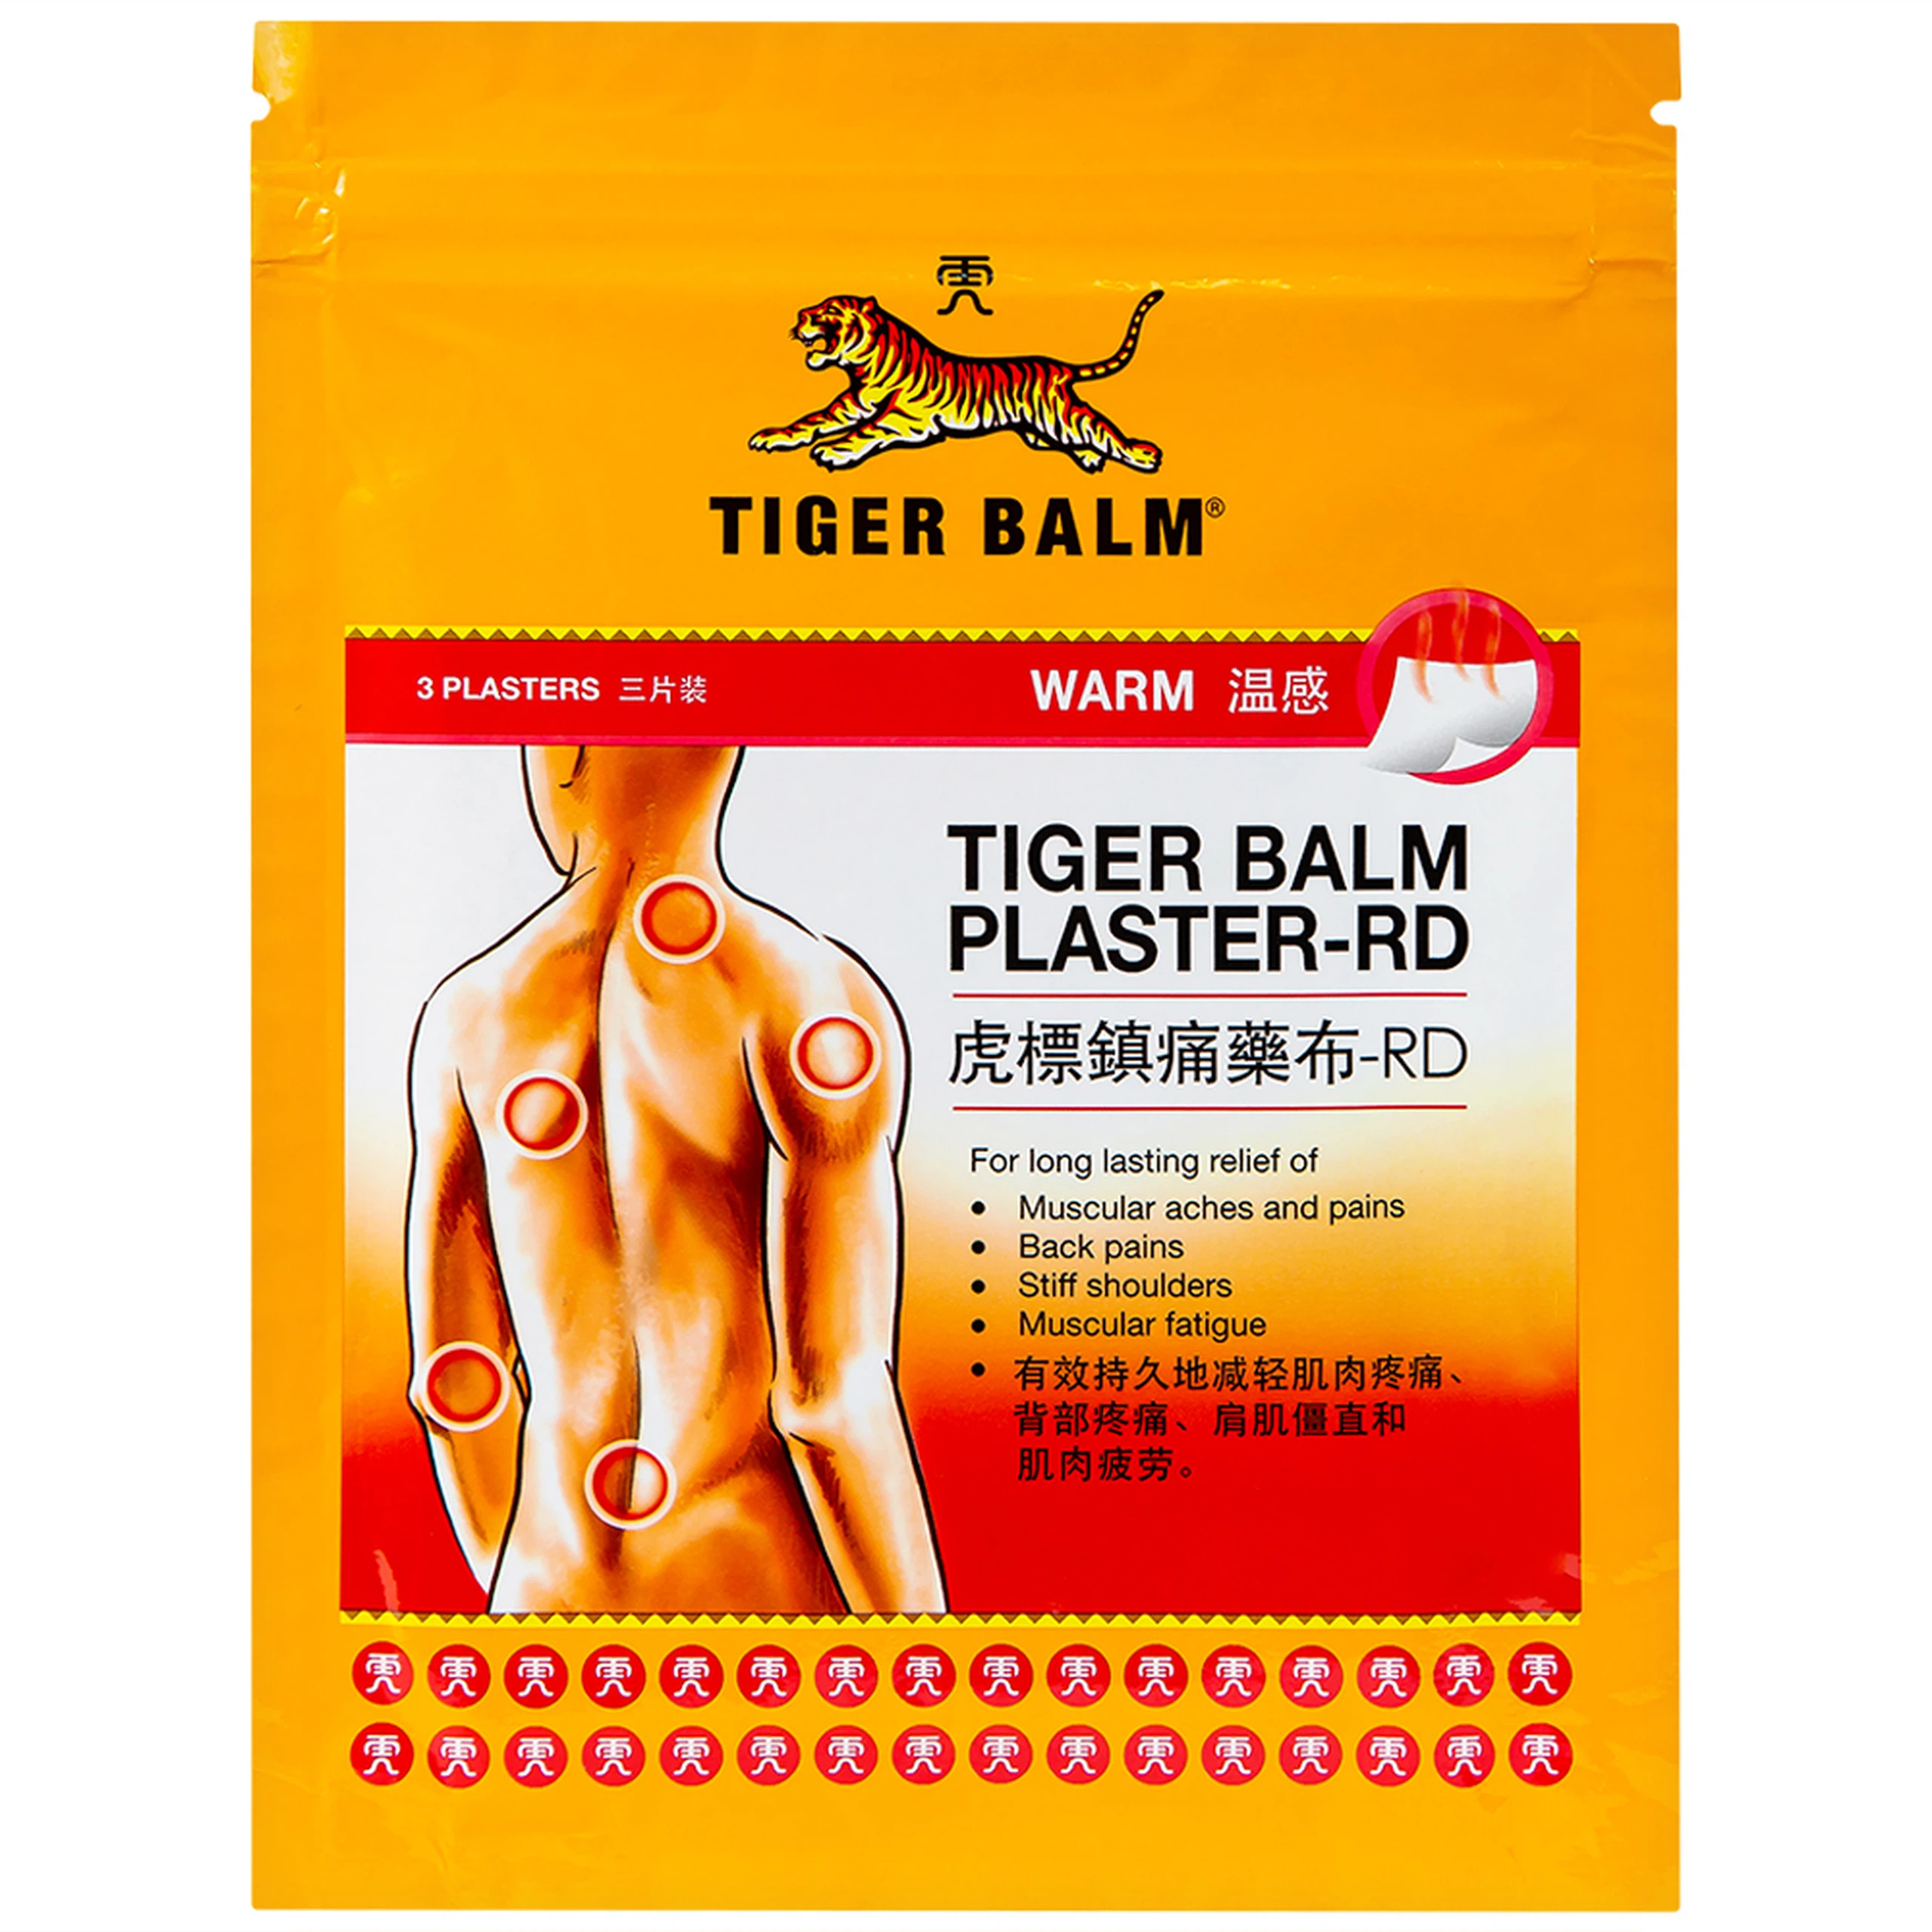 Miếng dán Tiger Balm Plaster - RD Haw Par giảm mỏi cơ, đau và nhức cơ (10cm x 14cm)